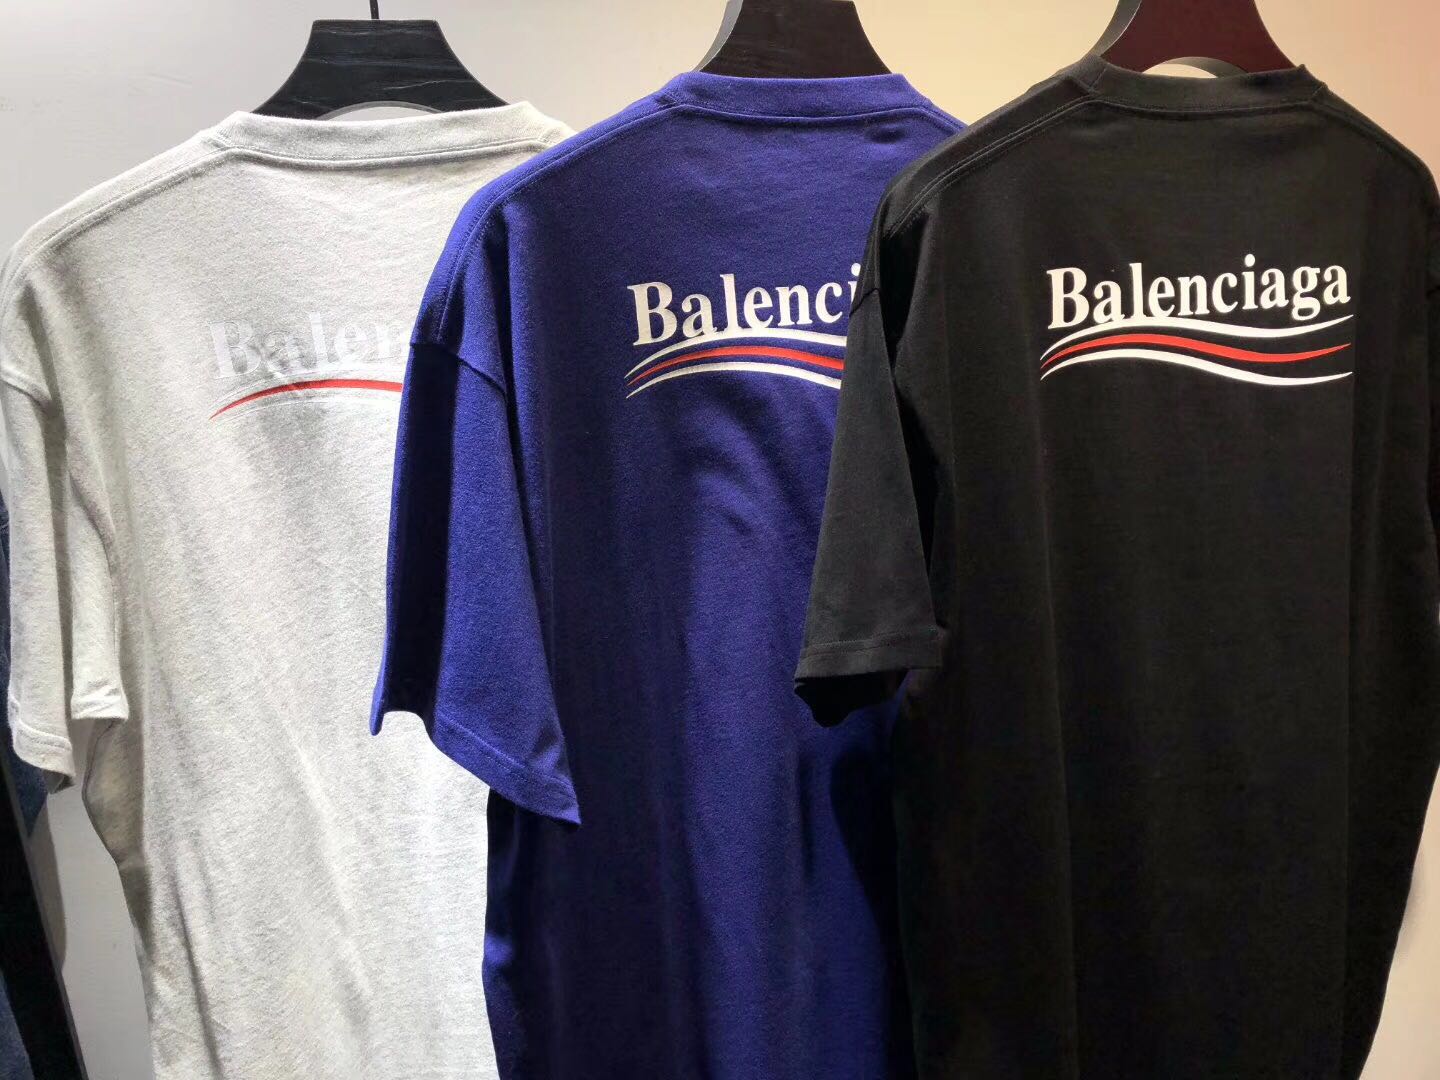 Vej gennemsnit Skifte tøj Balenciaga Logo 2018 Online Sale, UP TO 53% OFF